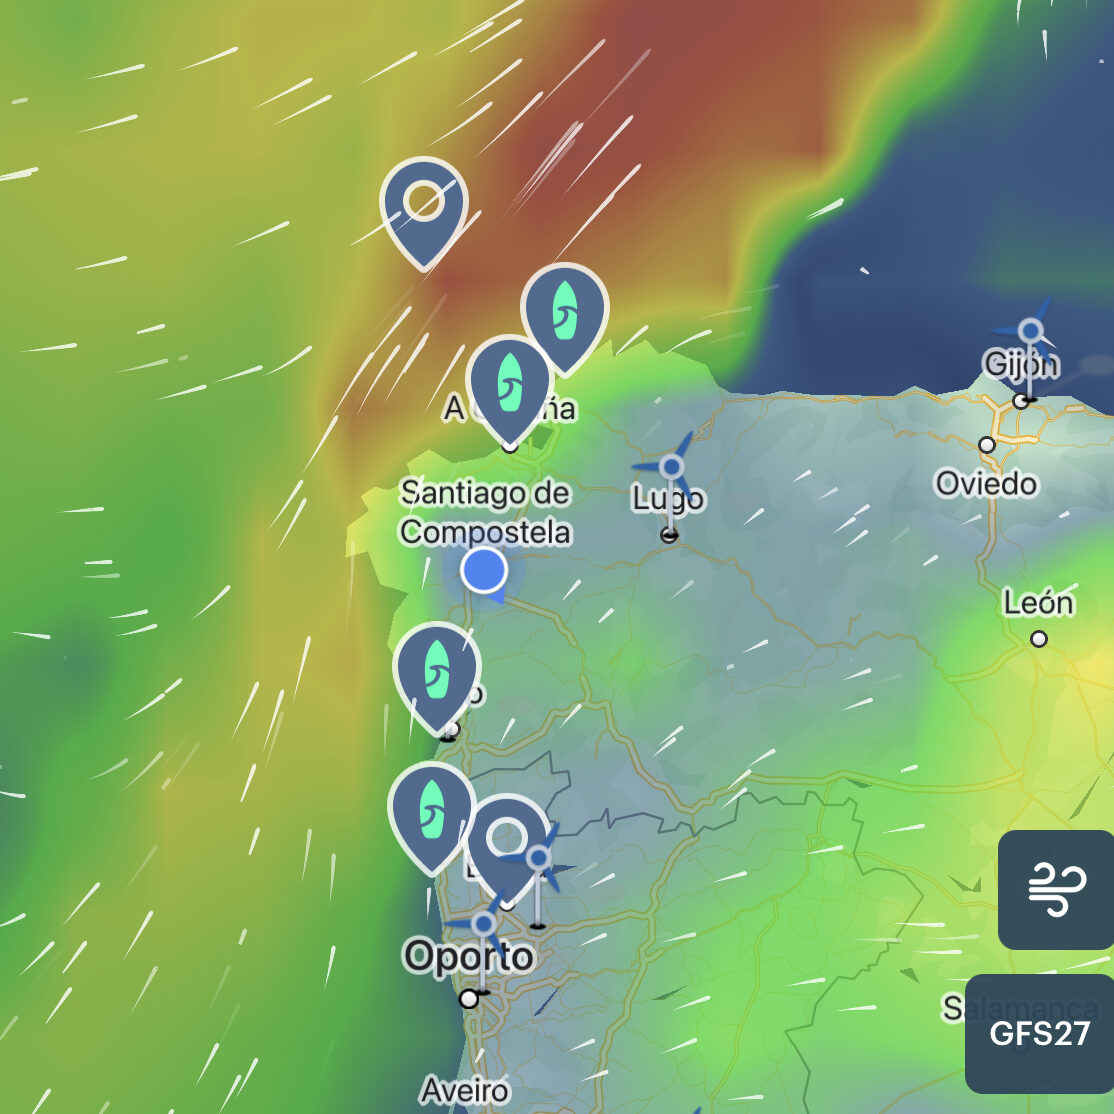 previsión de viento para surf en la App windy